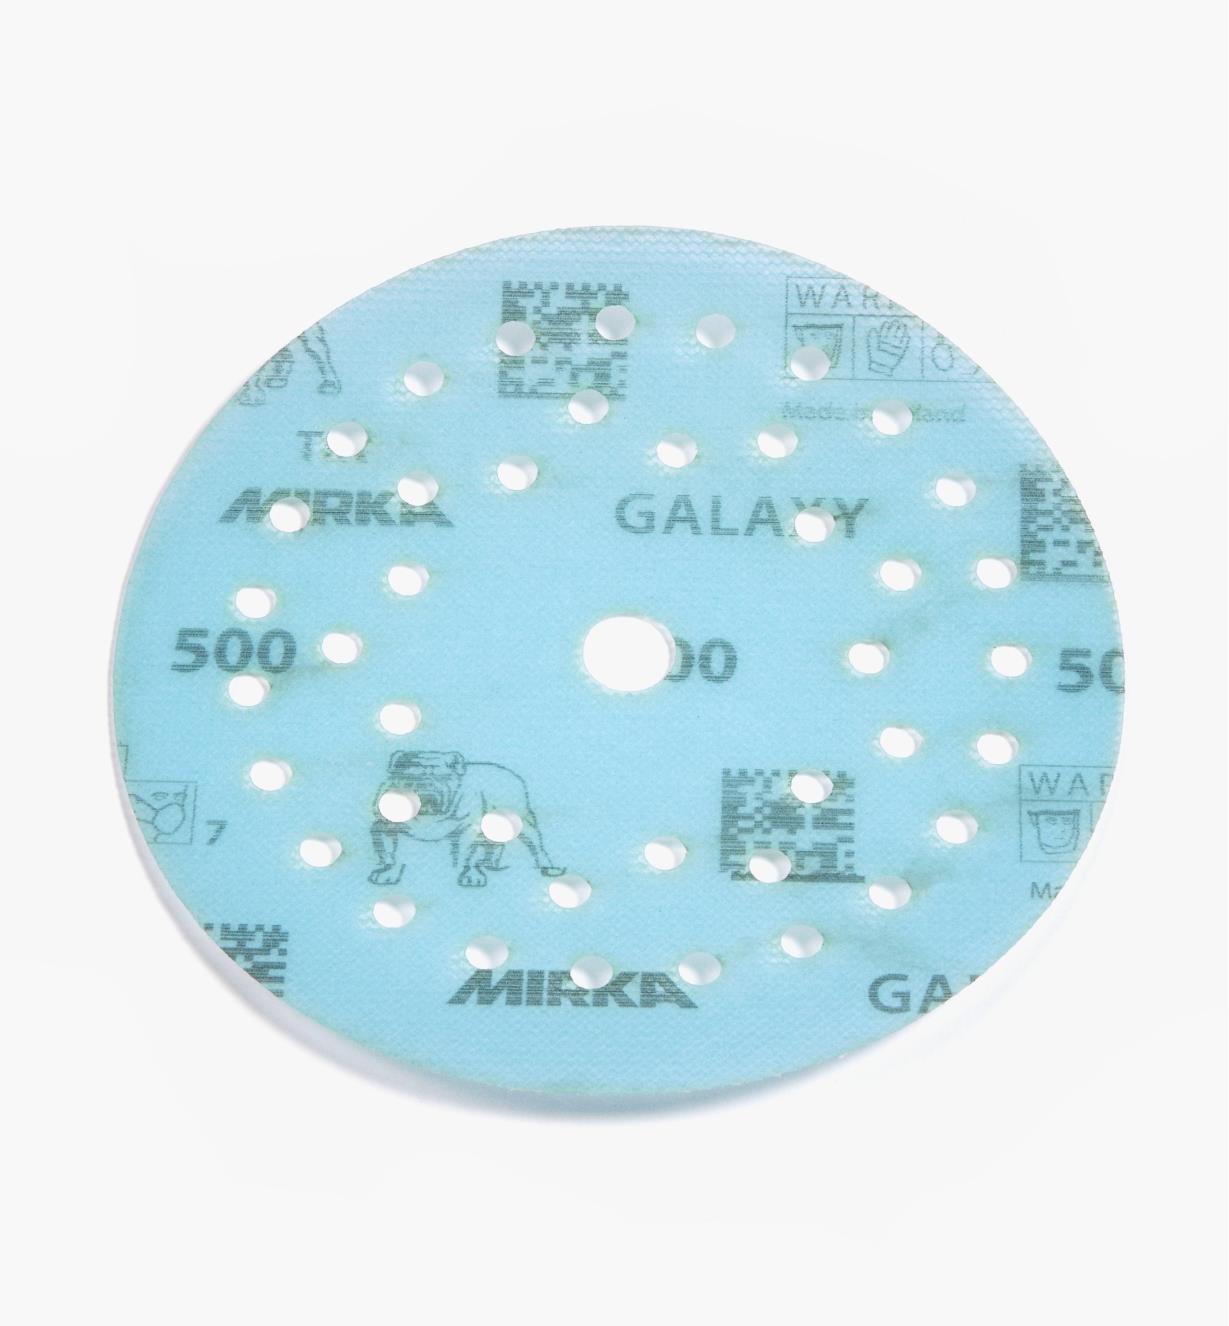 08K1351 - Disque abrasif autoagrippant Galaxy Multifit, 5 po, grain 500, l'unité